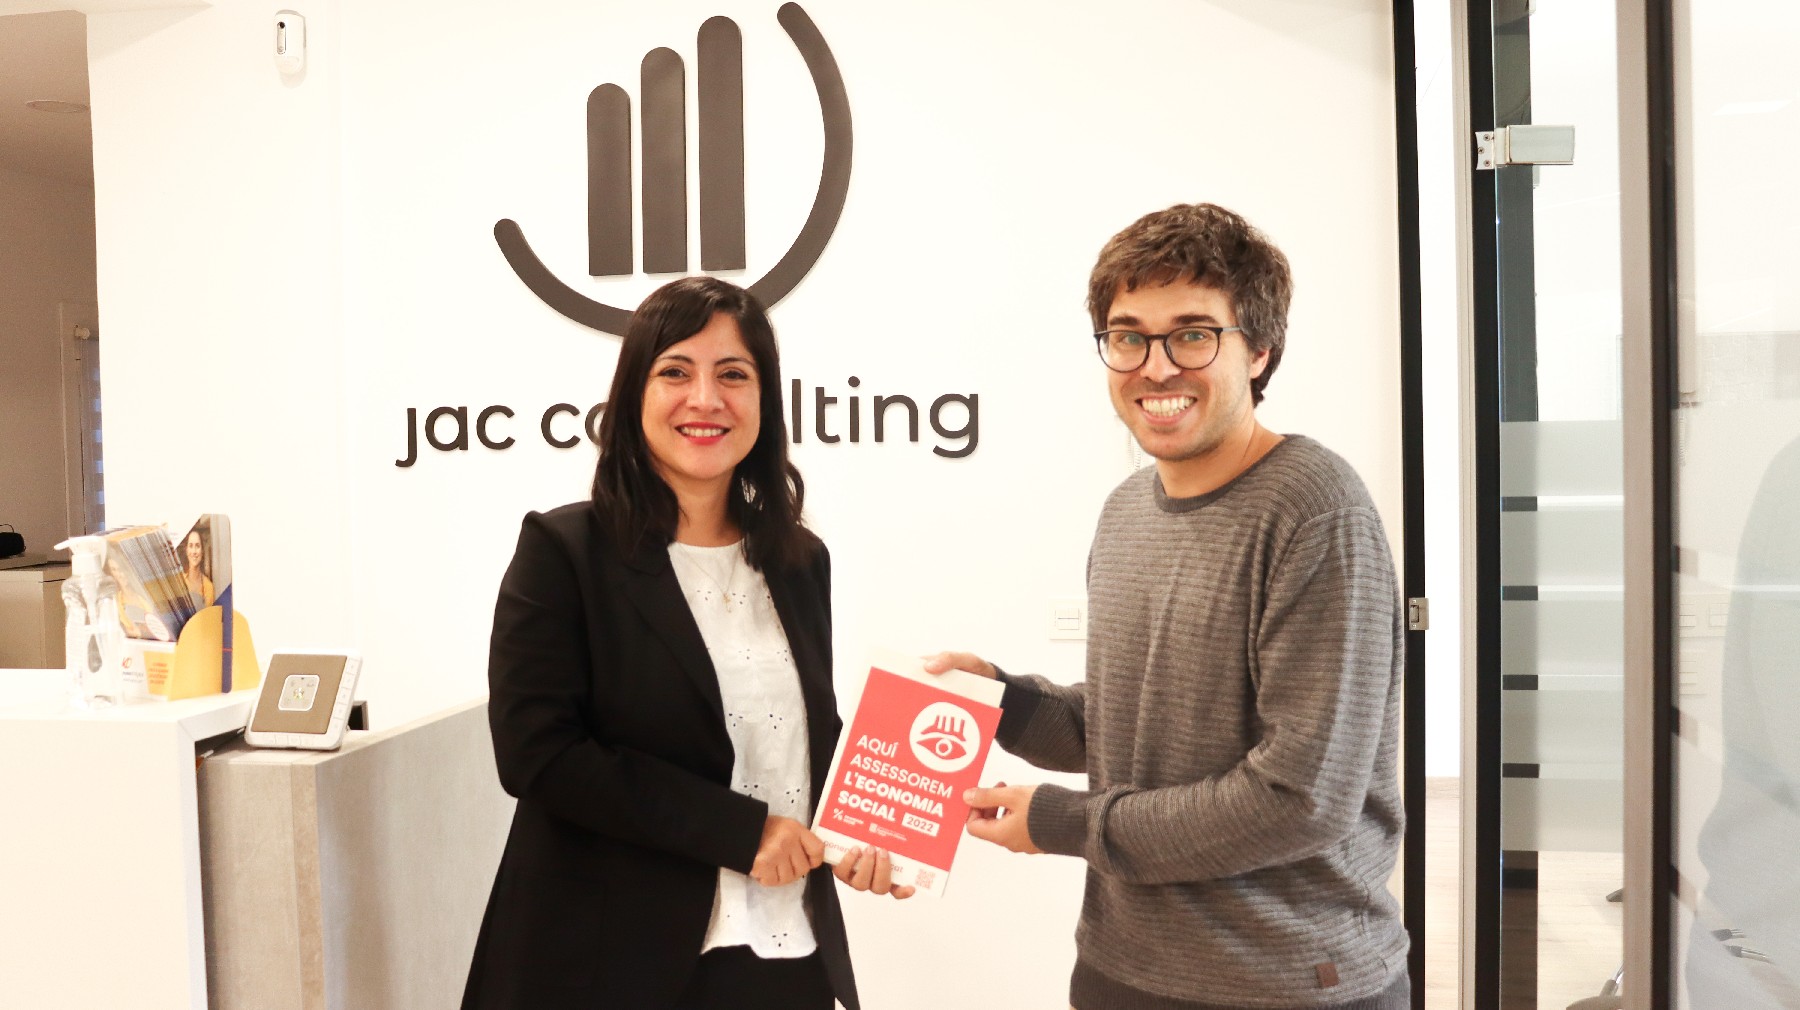 JAC Consulting de Lleida